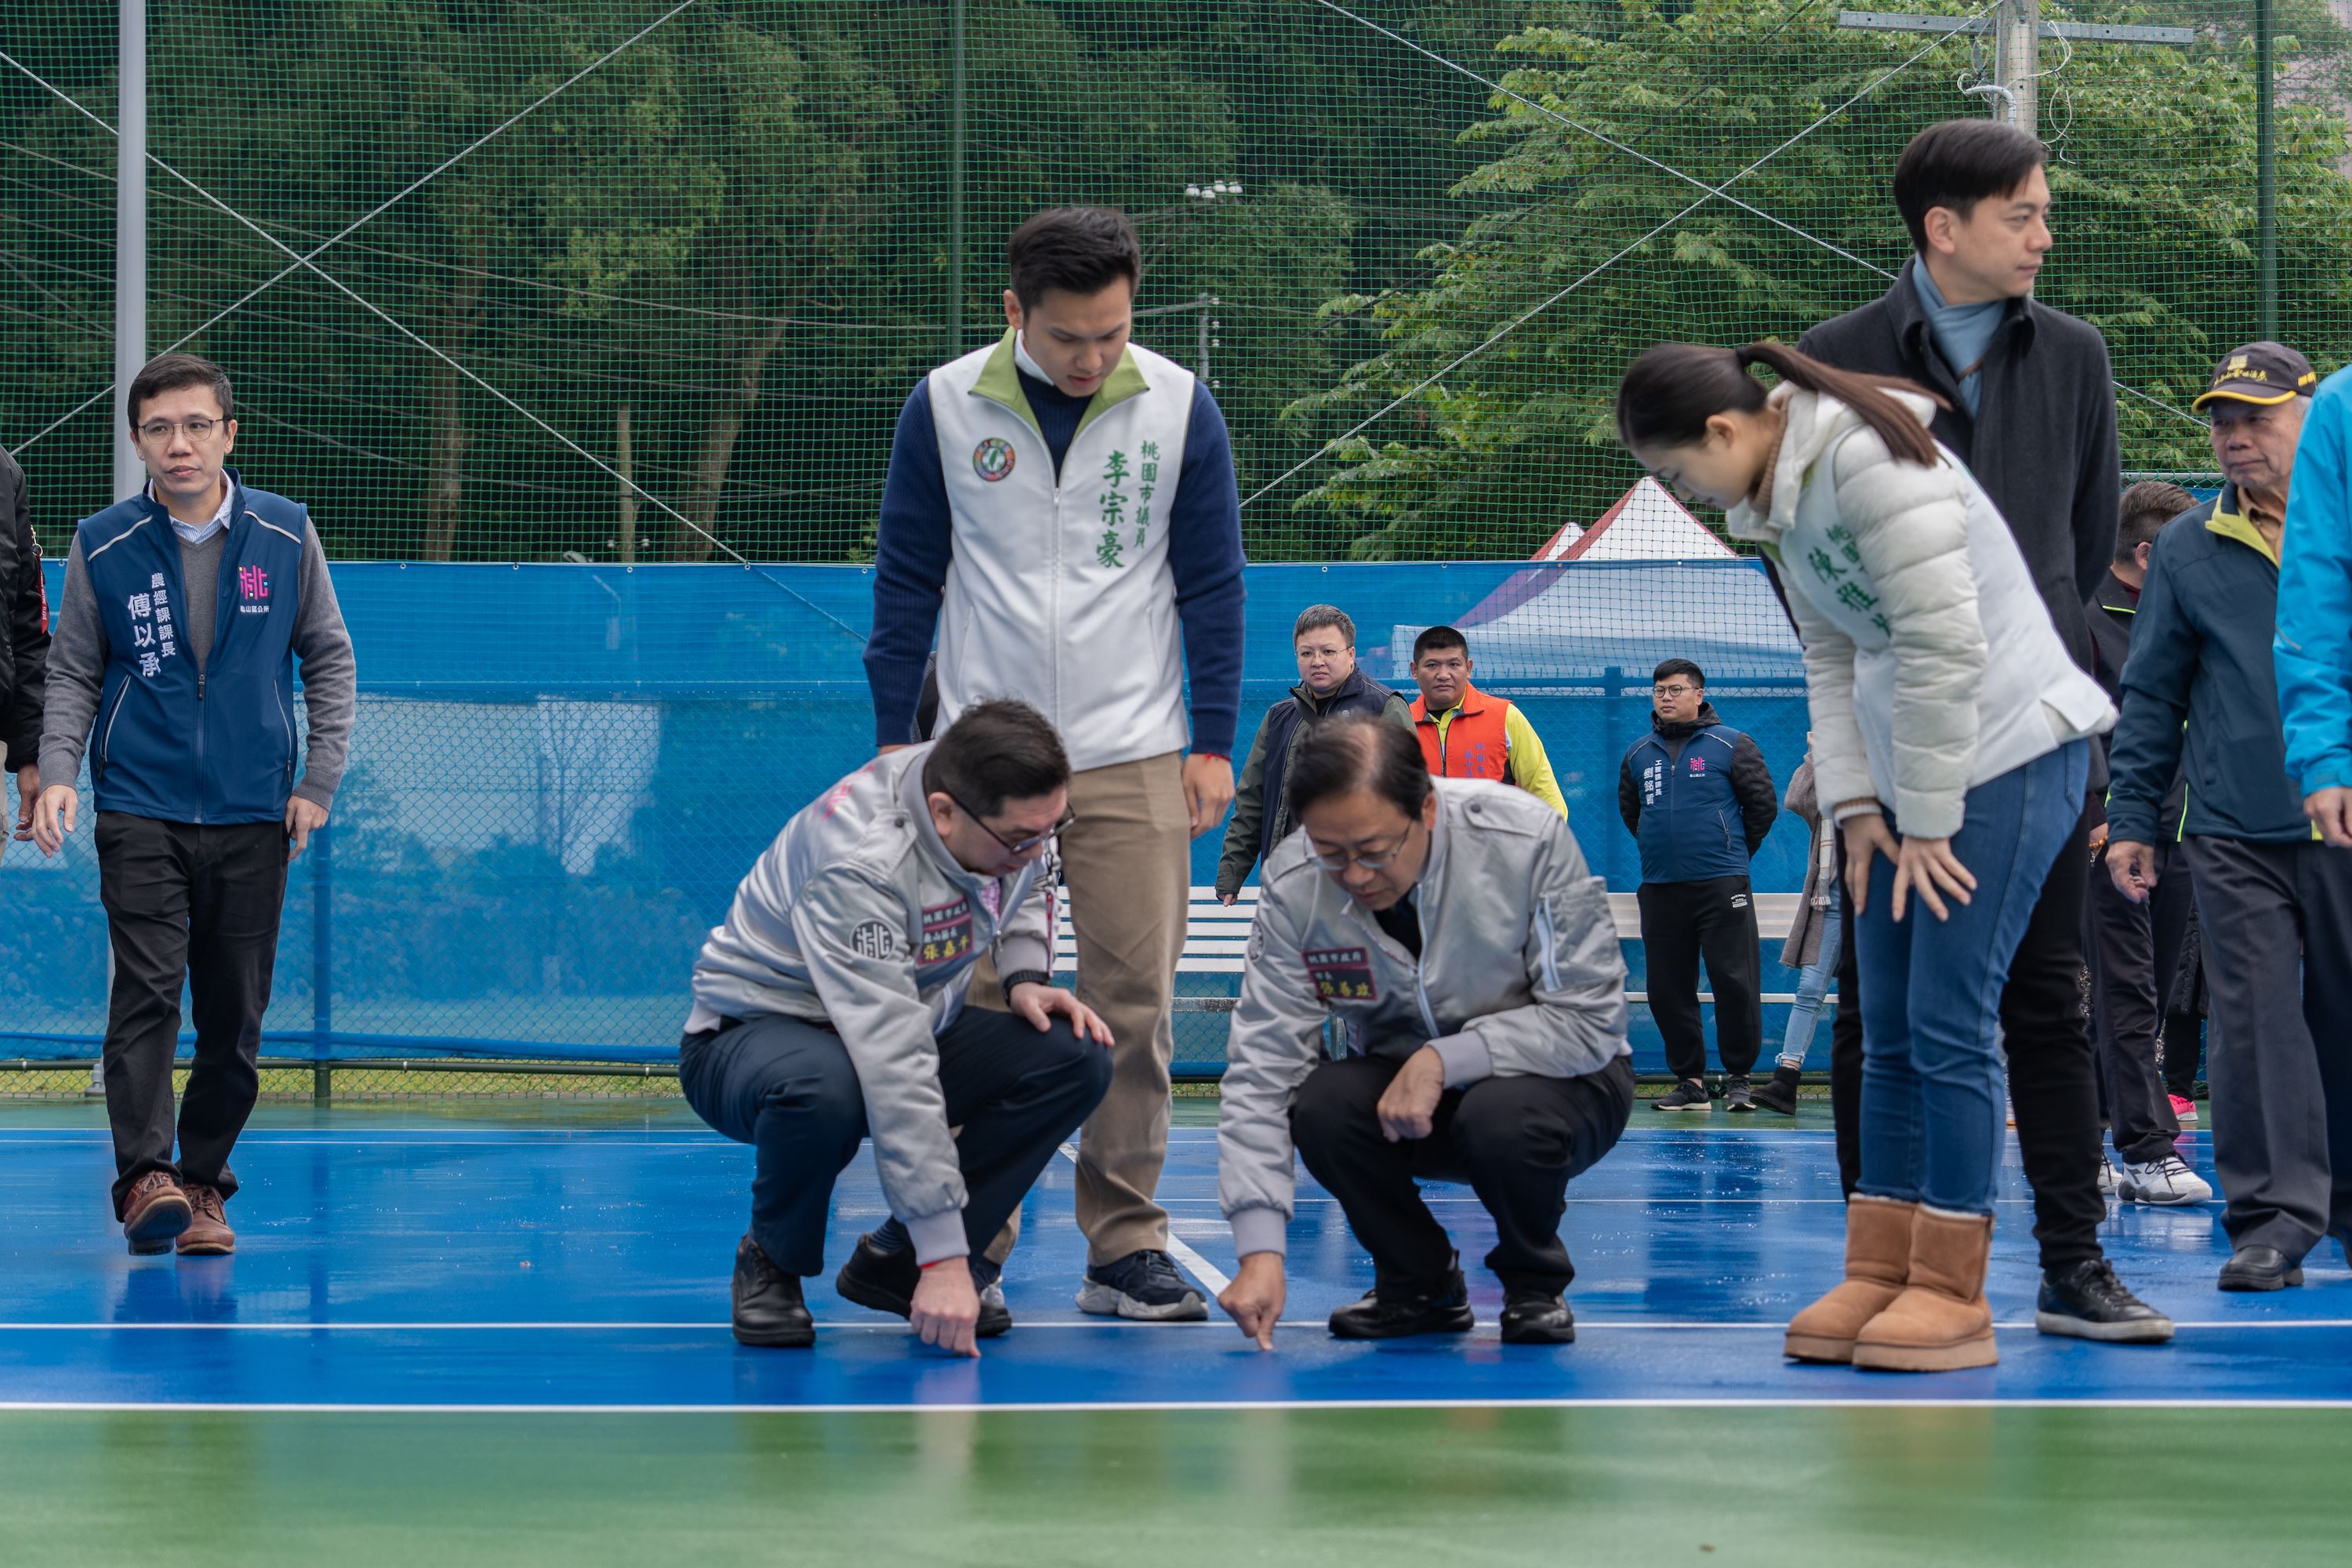 龜山區陸光網球場設施改善完成   優化運動環境提升使用效益